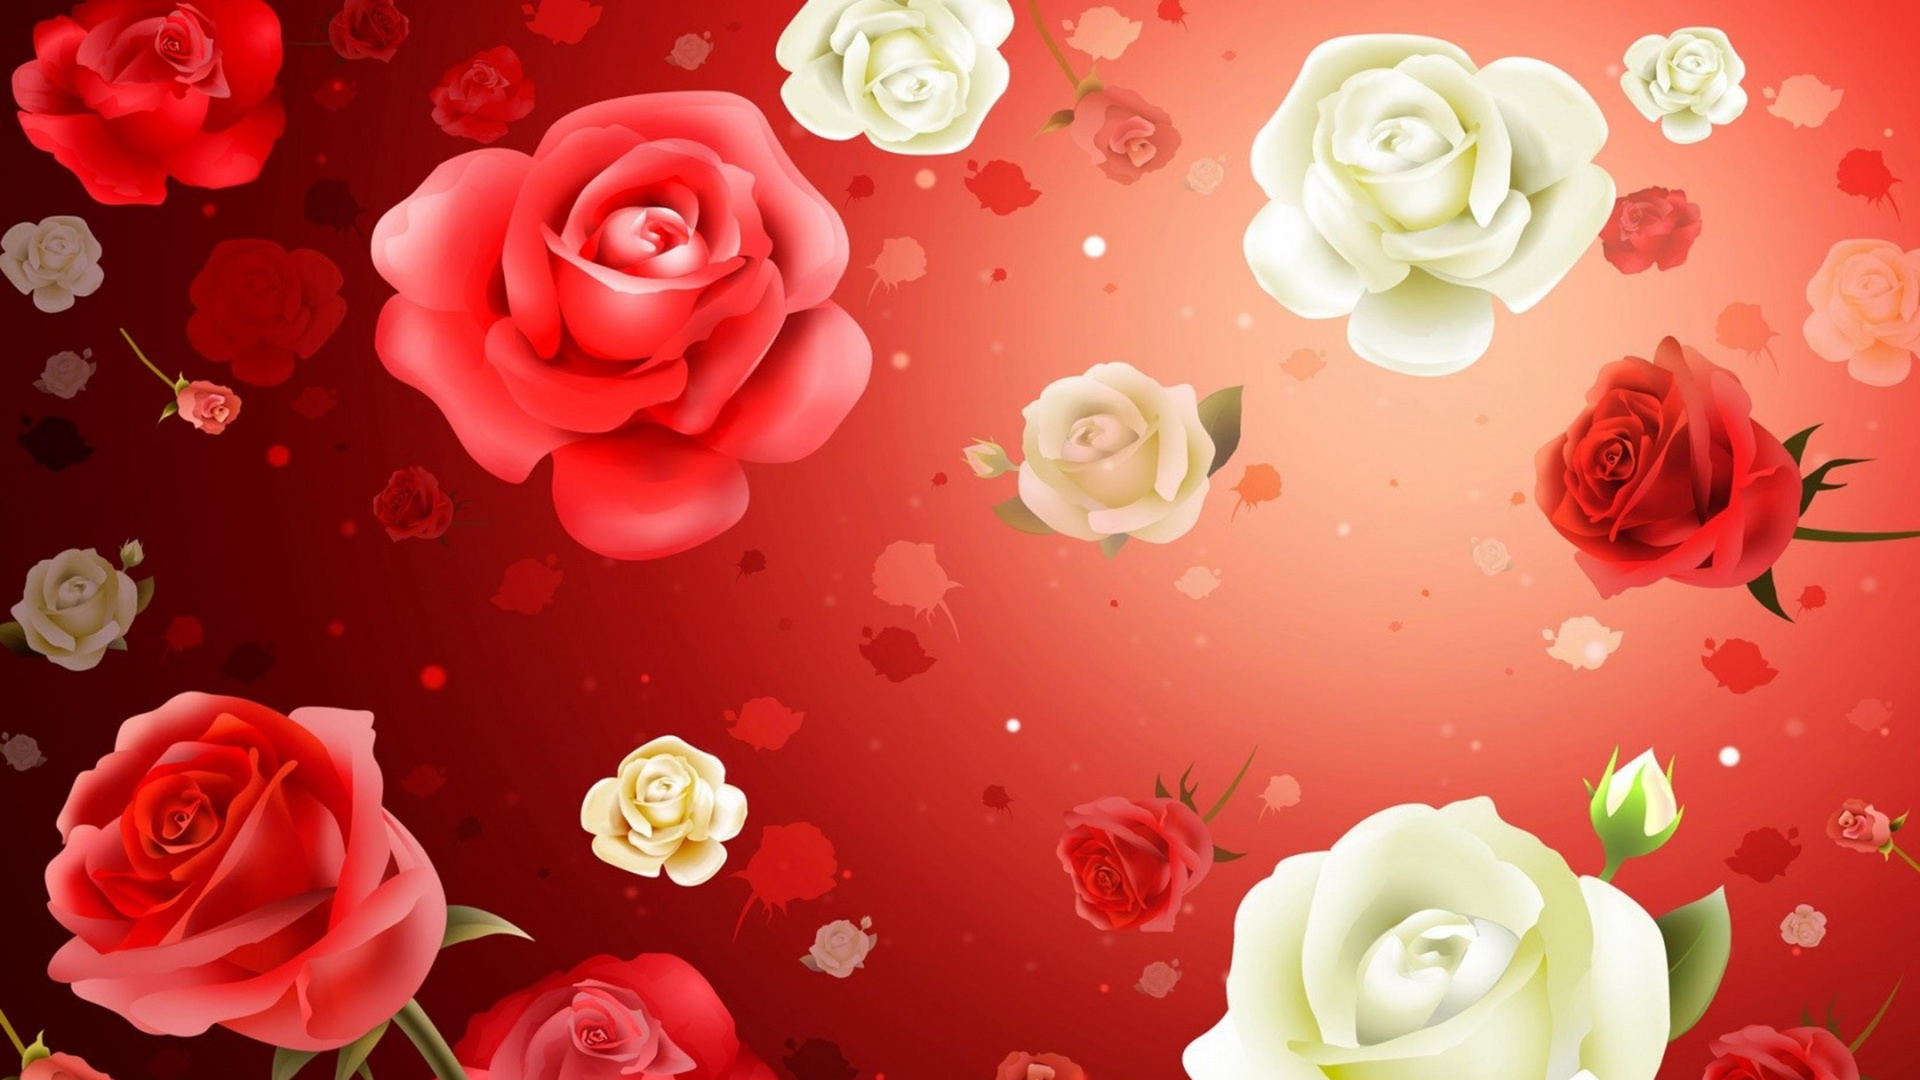 红色的, 玫瑰花园, 粉红色, 玫瑰家庭, 菌群 壁纸 1920x1080 允许